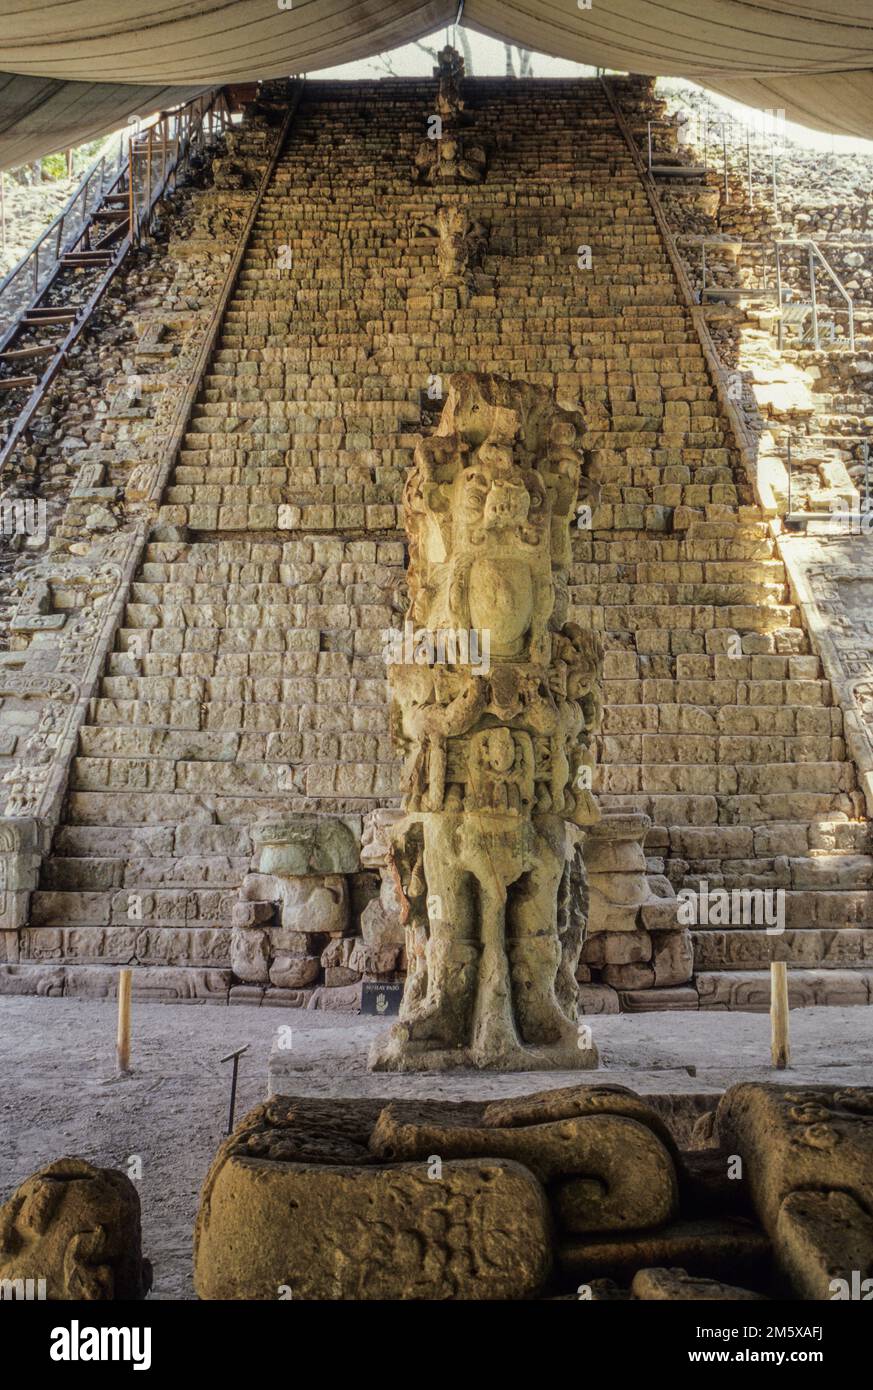 Les ruines de Copan, Honduras. Stella M en face de l'escalier hiéroglyphique, fumée Règle Shell. Banque D'Images